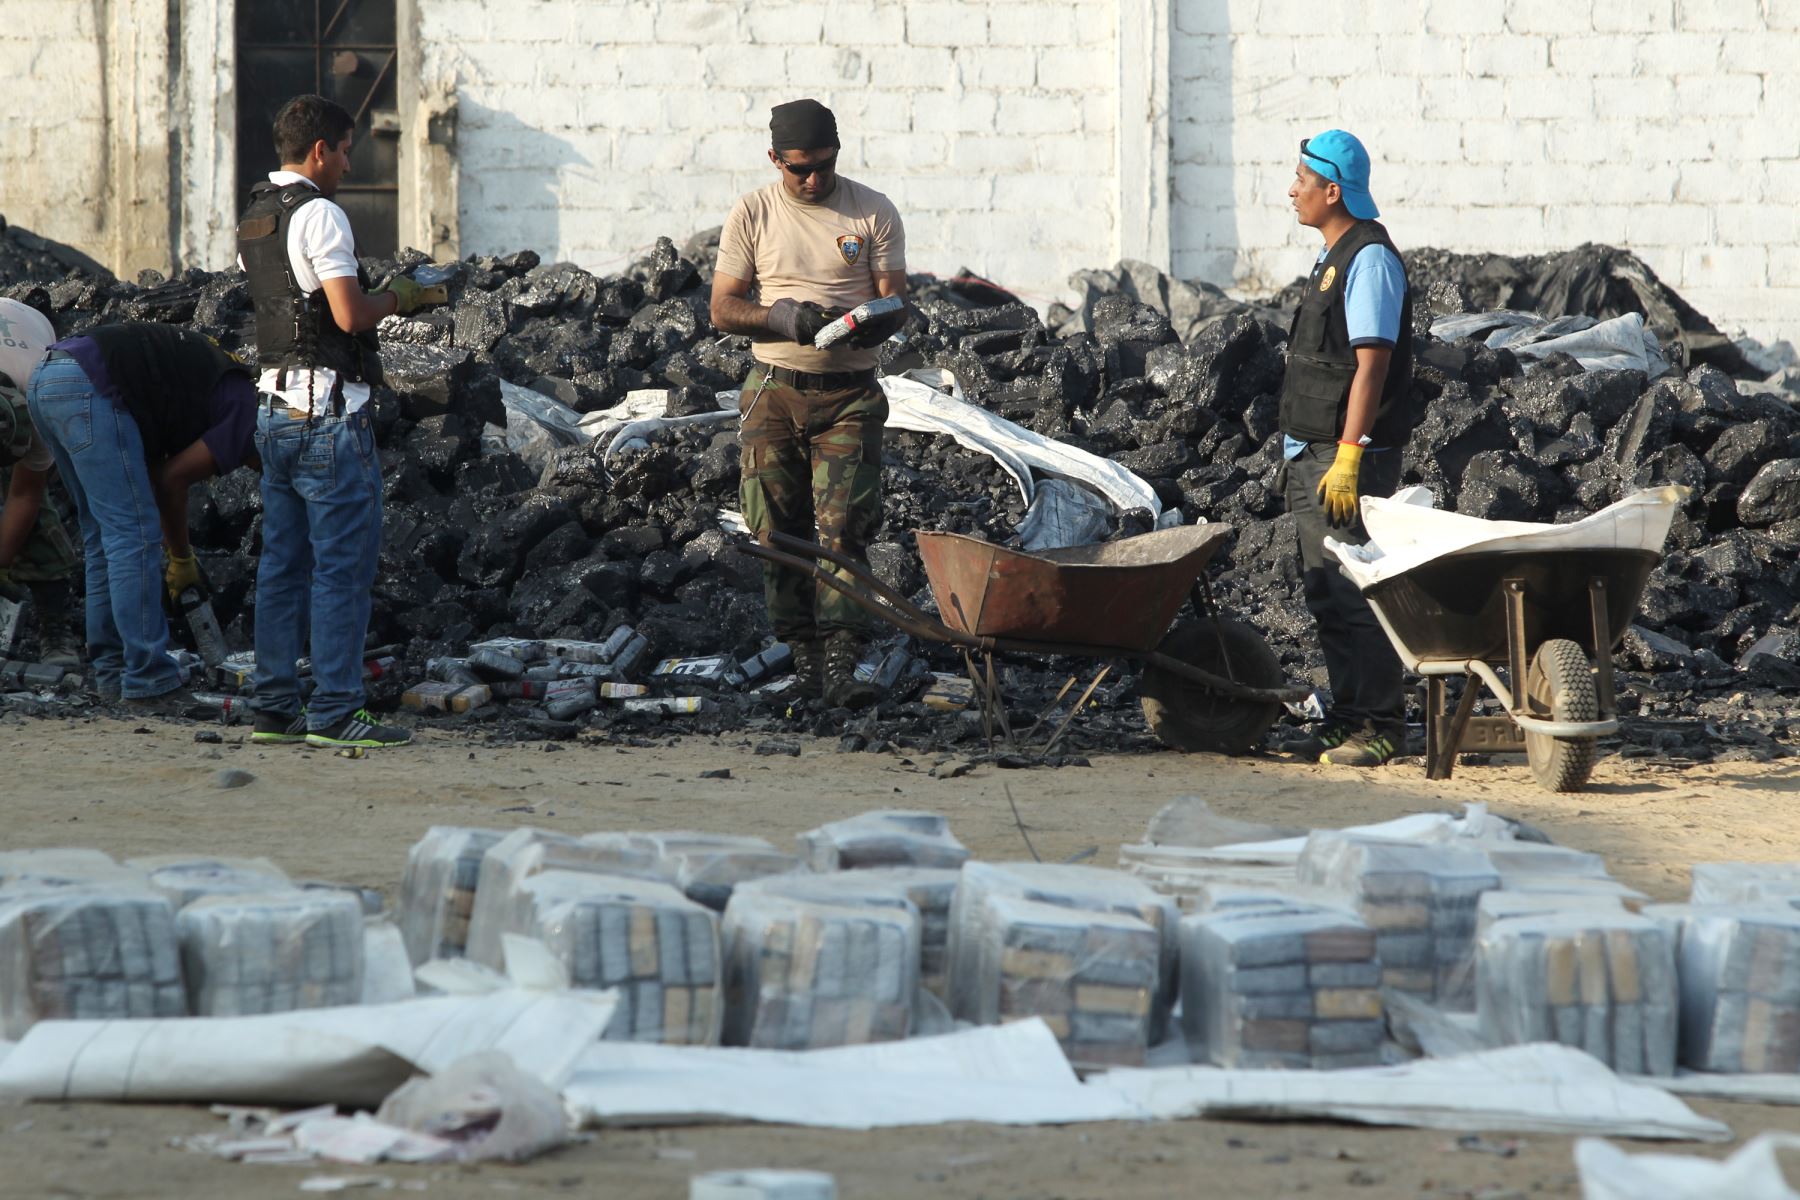 LIMA PERU, AGOSTO 26. Presidente Ollanta Humala y ministro Daniel Urresti, constatan  incautación de 3 toneladas de droga, tras operativo en Trujillo.  Foto: ANDINA/Melina Mejia